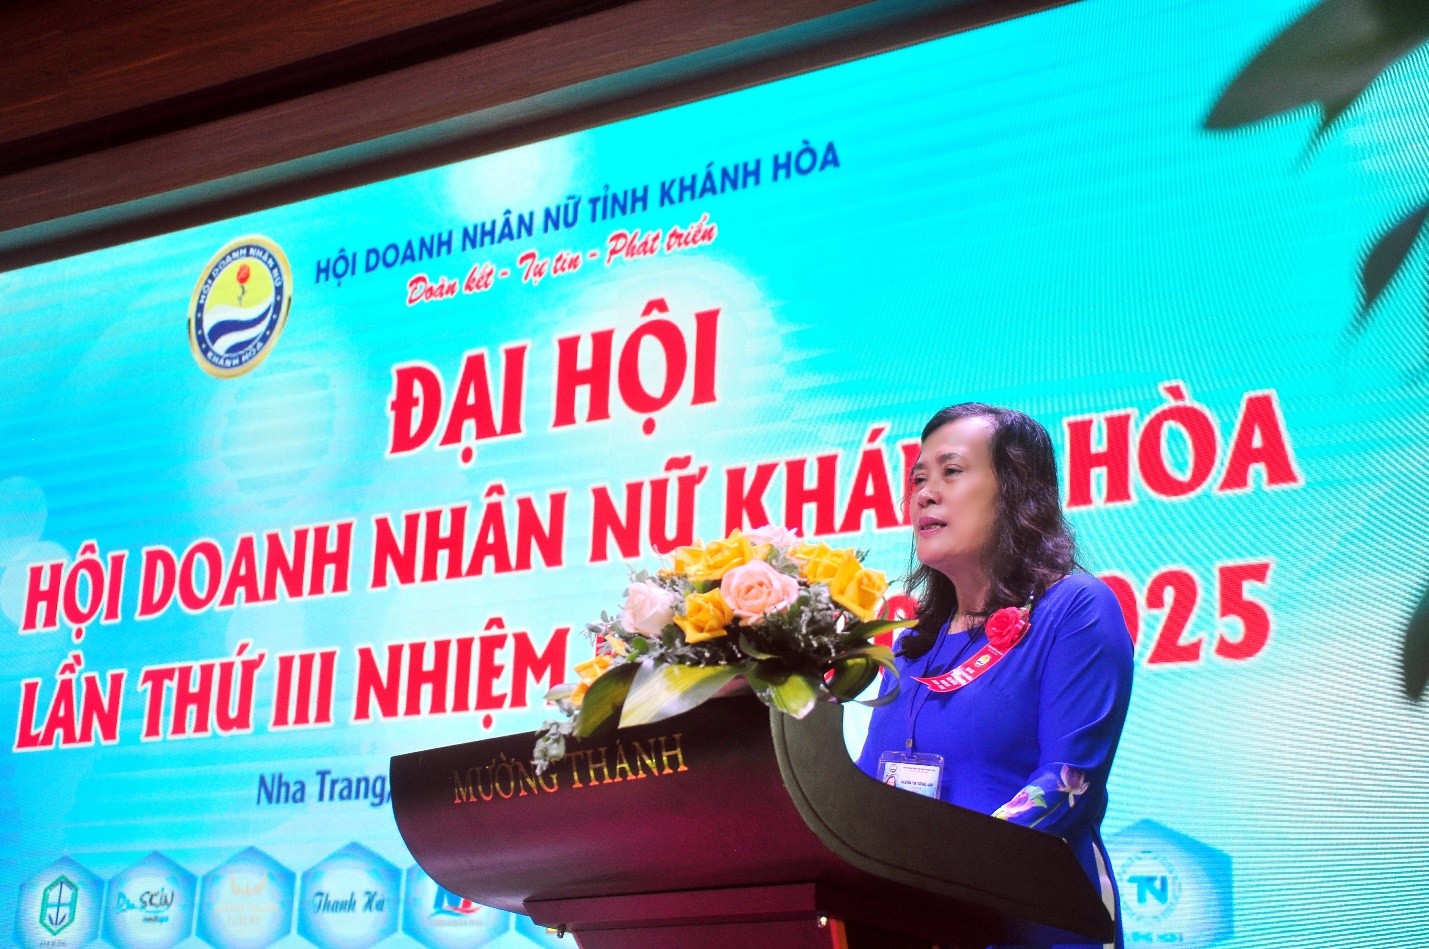 Bà Nguyễn Thị Tường Anh, Chủ tịch Hội Doanh Nhân Nữ Khánh Hòa phát biểu khai mạc Đại Hội Hội Doanh Nhân Nữ Khánh Hòa